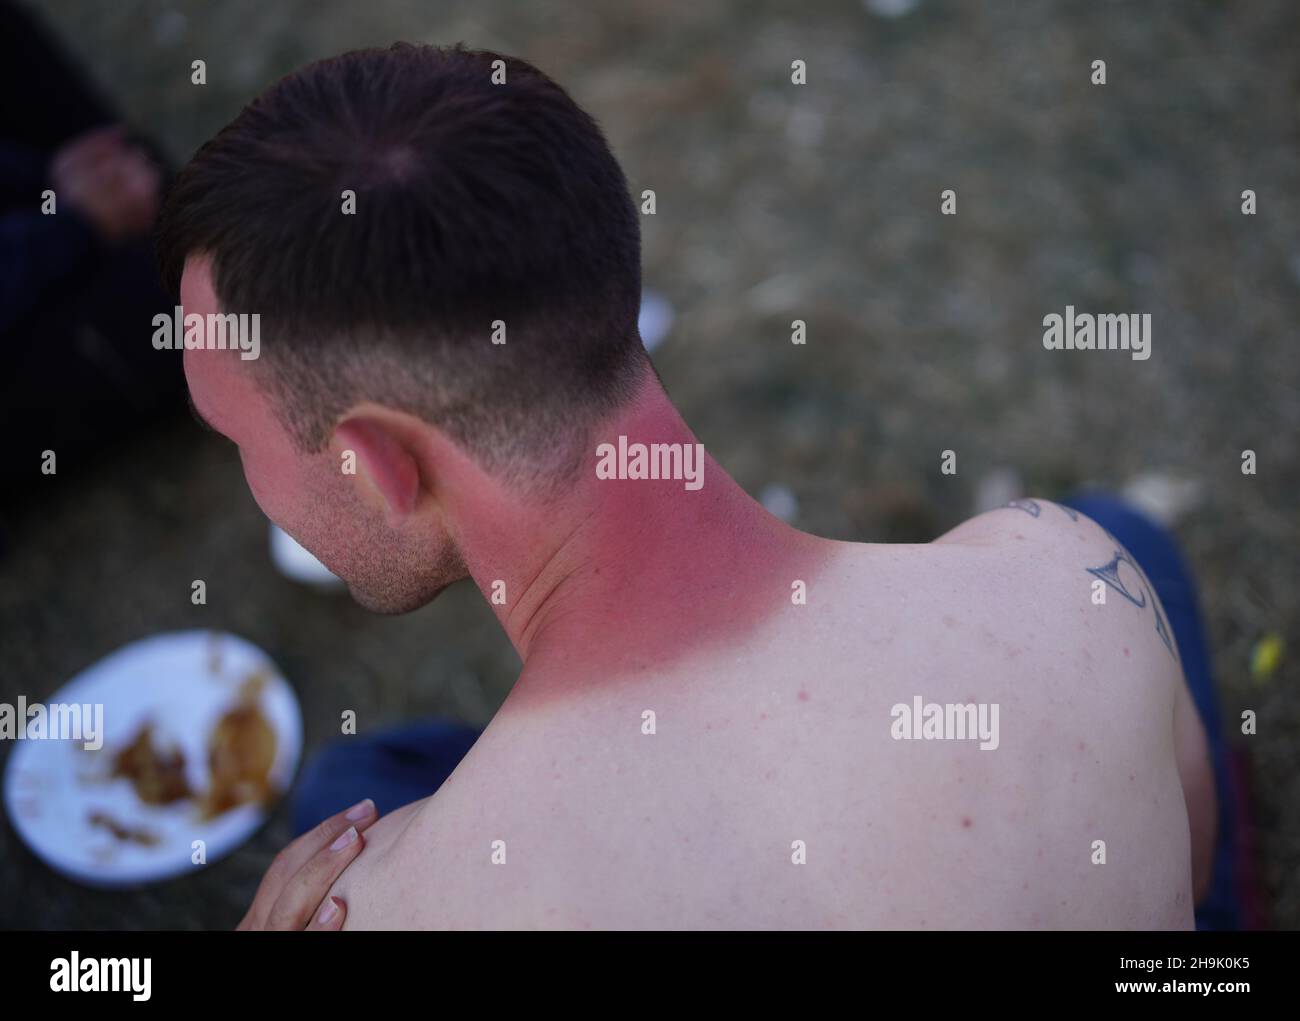 Il collo di un uomo bruciato dal sole al Reading Festival del 2018. Data foto: Sabato 25 agosto 2018. Il credito fotografico dovrebbe essere: Richard Grey/EMPICS Foto Stock